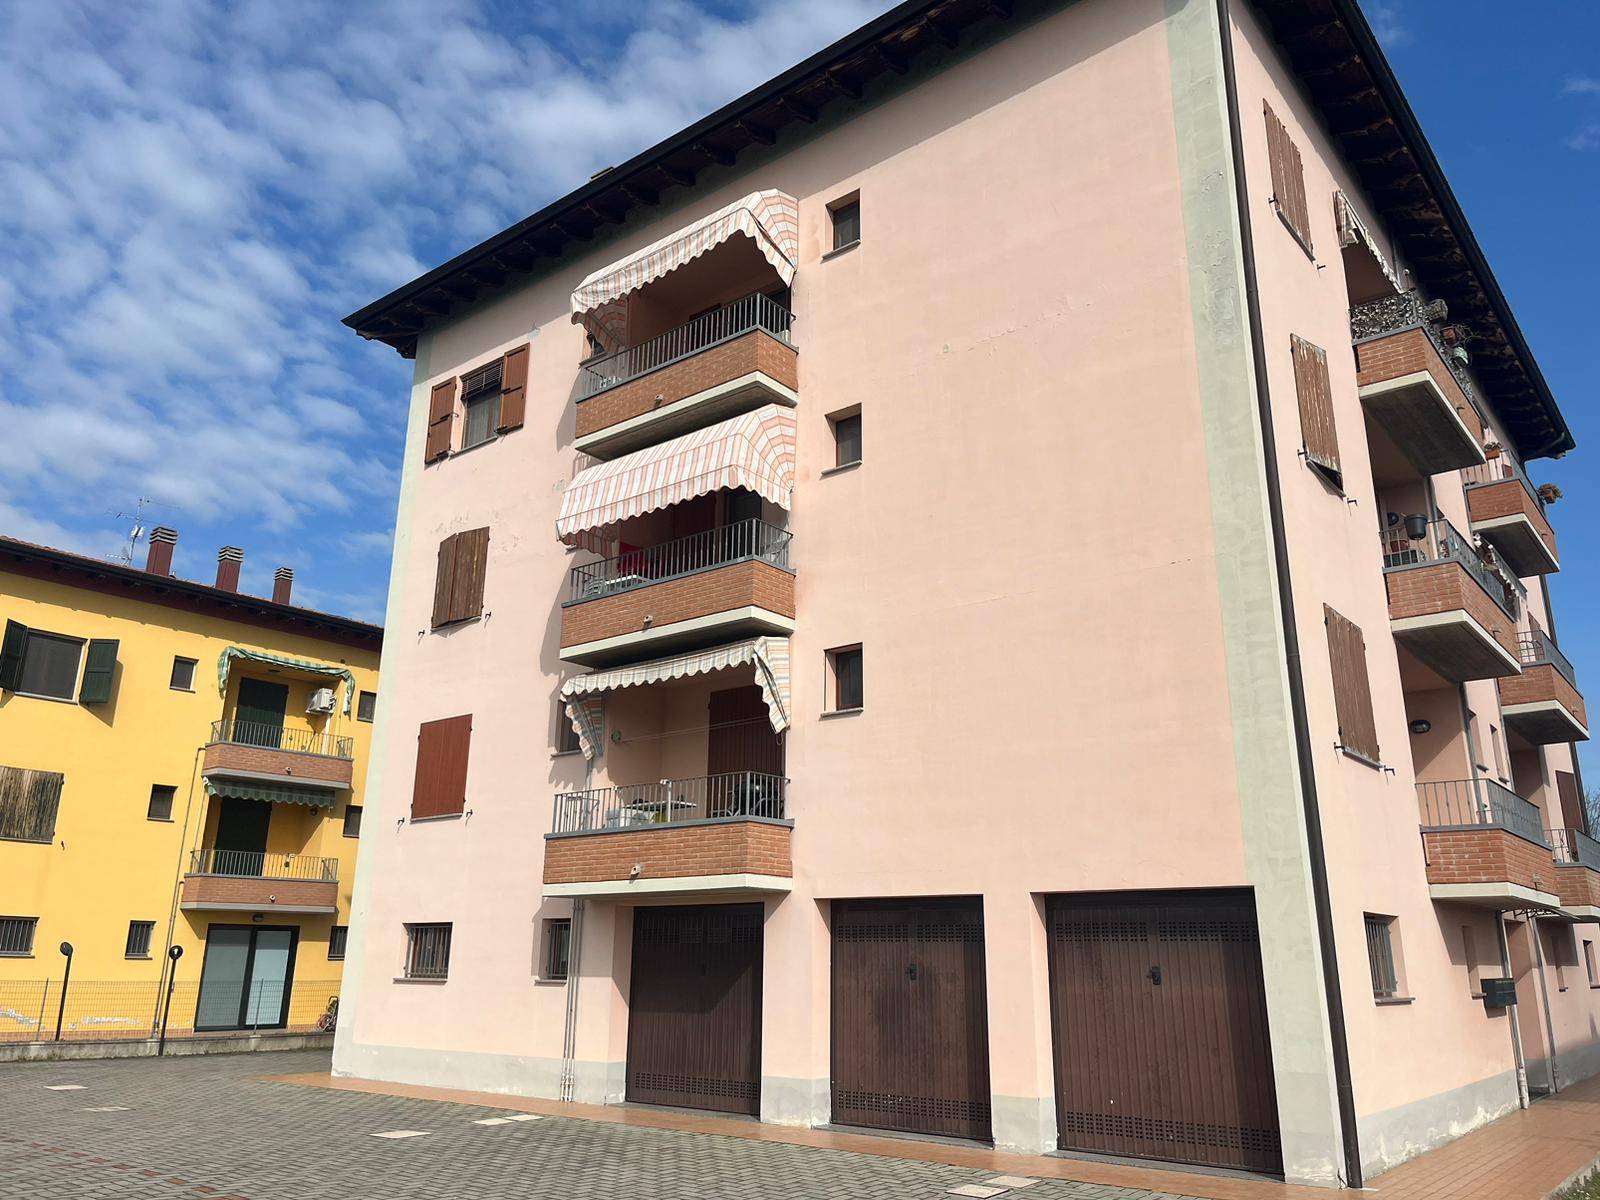 Appartamento in vendita a Castelfranco Emilia, 3 locali, zona vato, prezzo € 135.000 | PortaleAgenzieImmobiliari.it